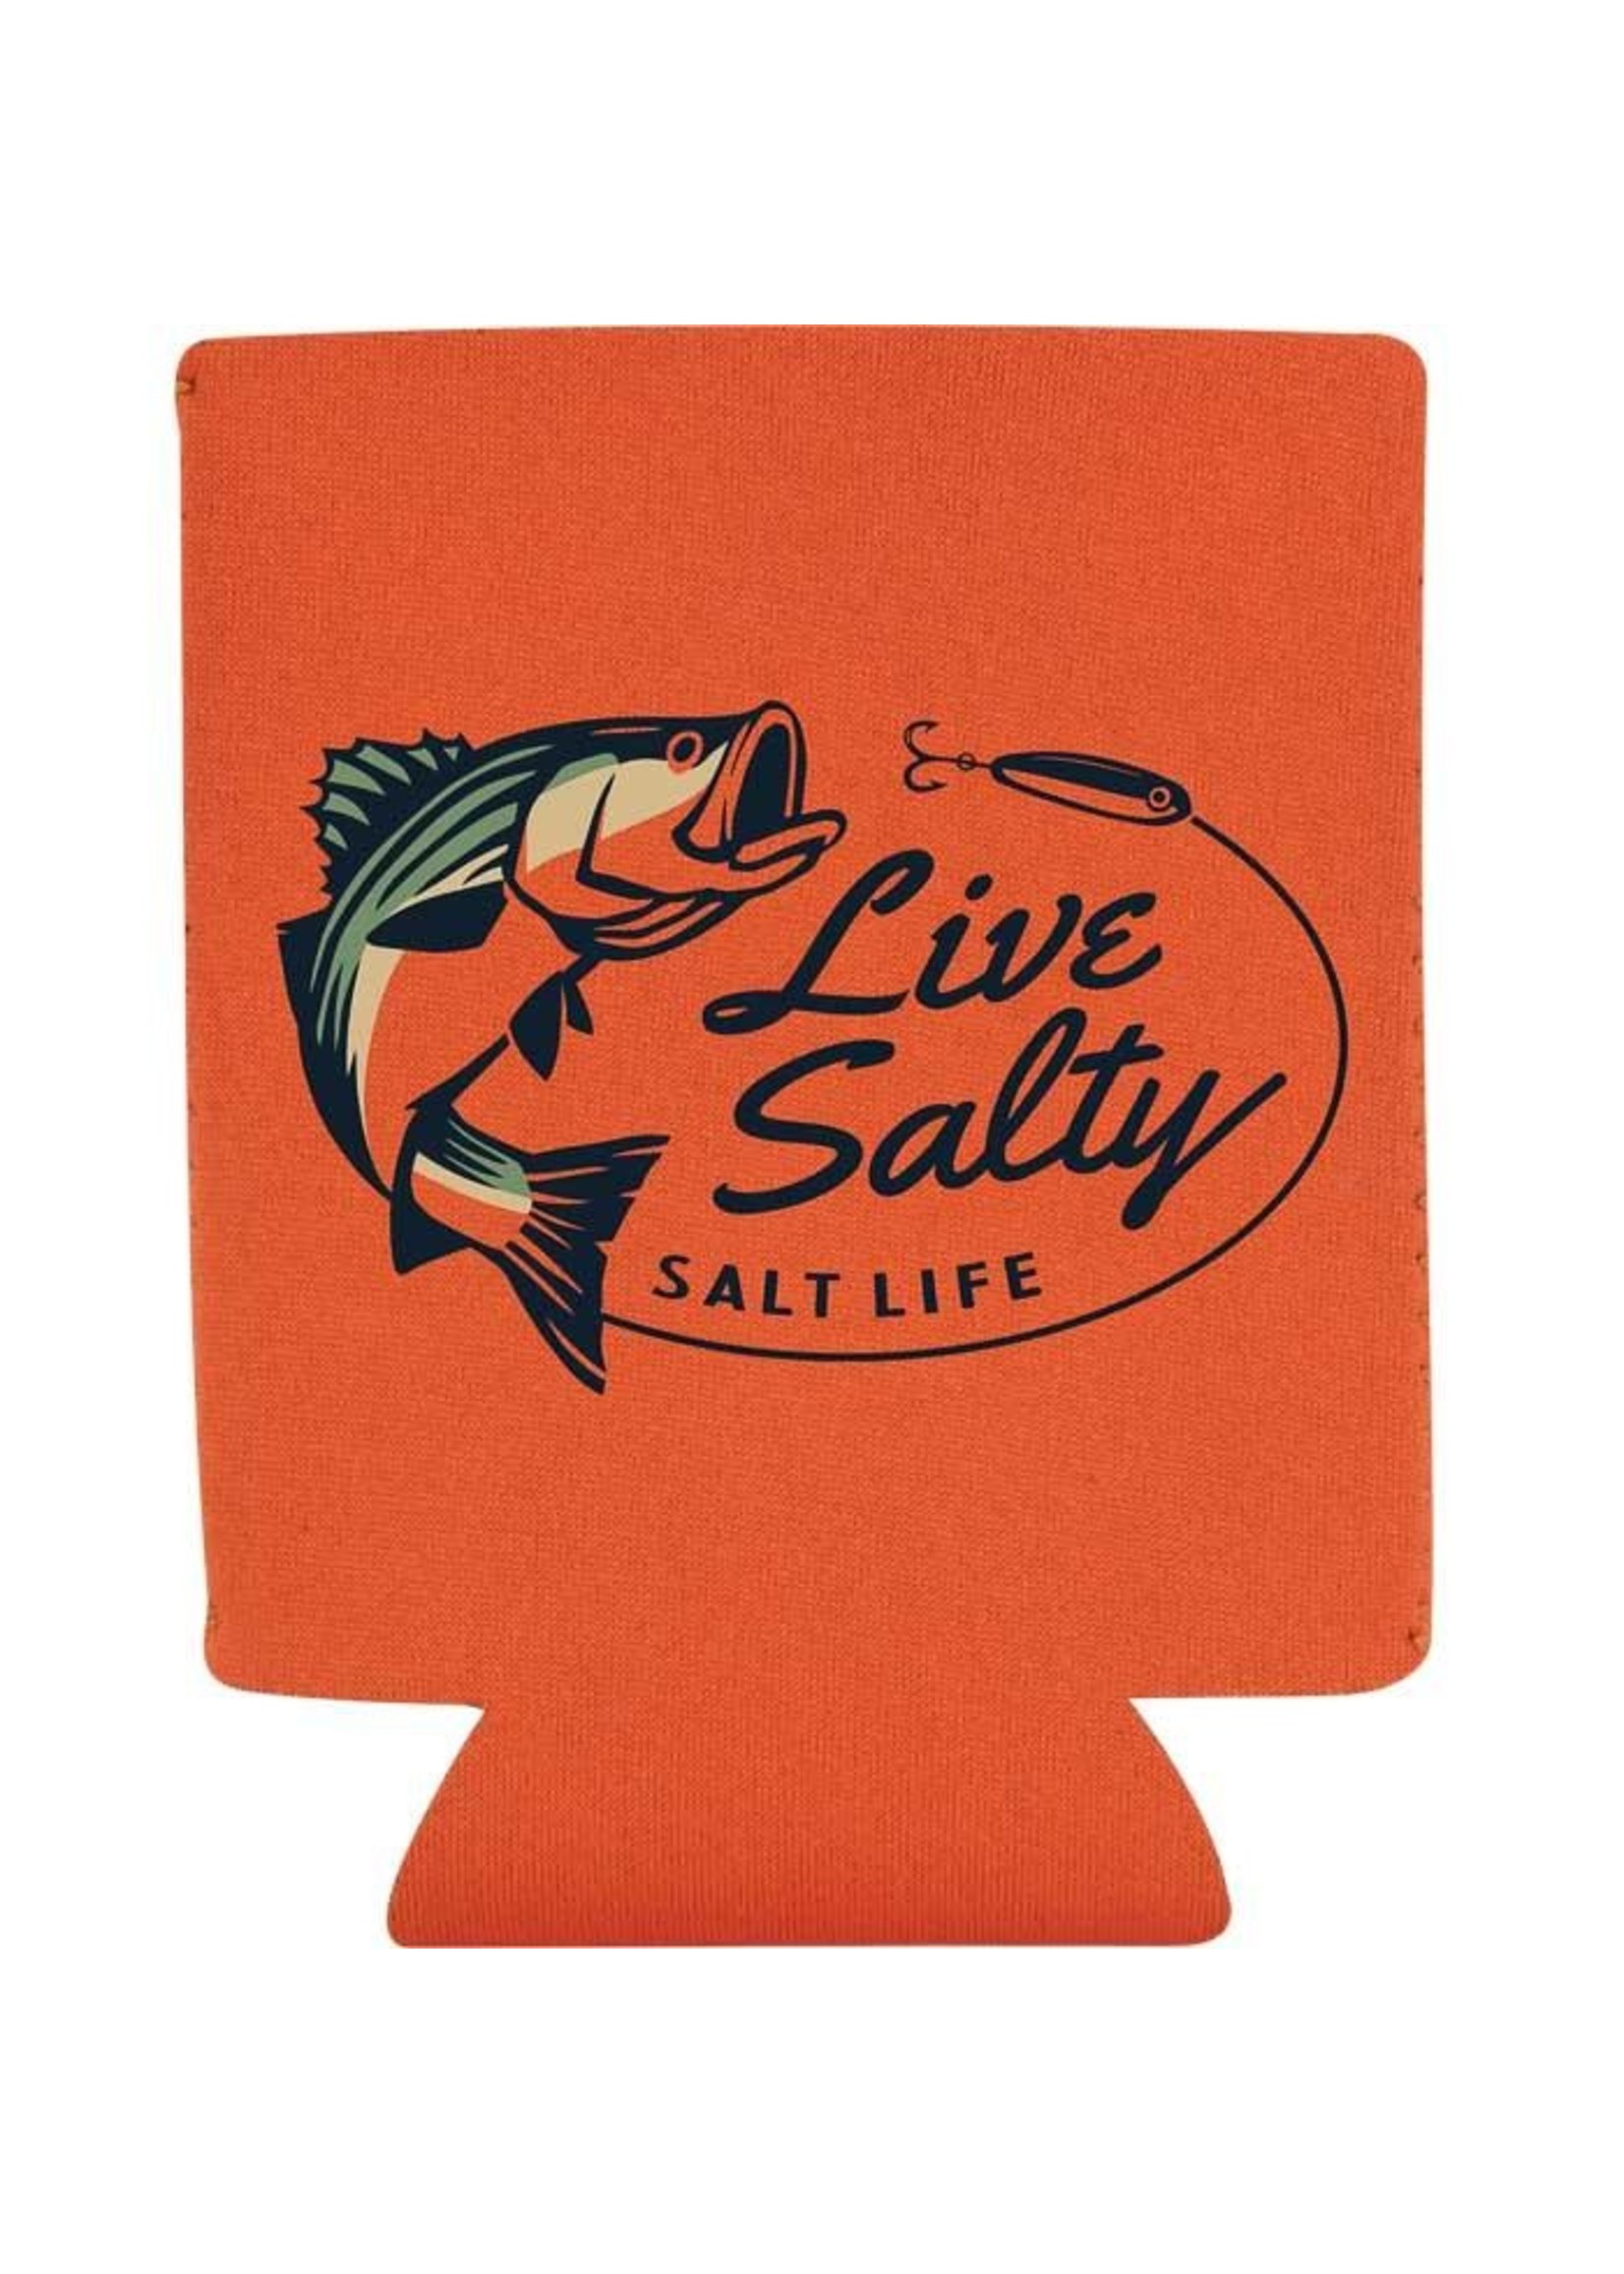 Salt Life Salty Striper Orange Can Holder